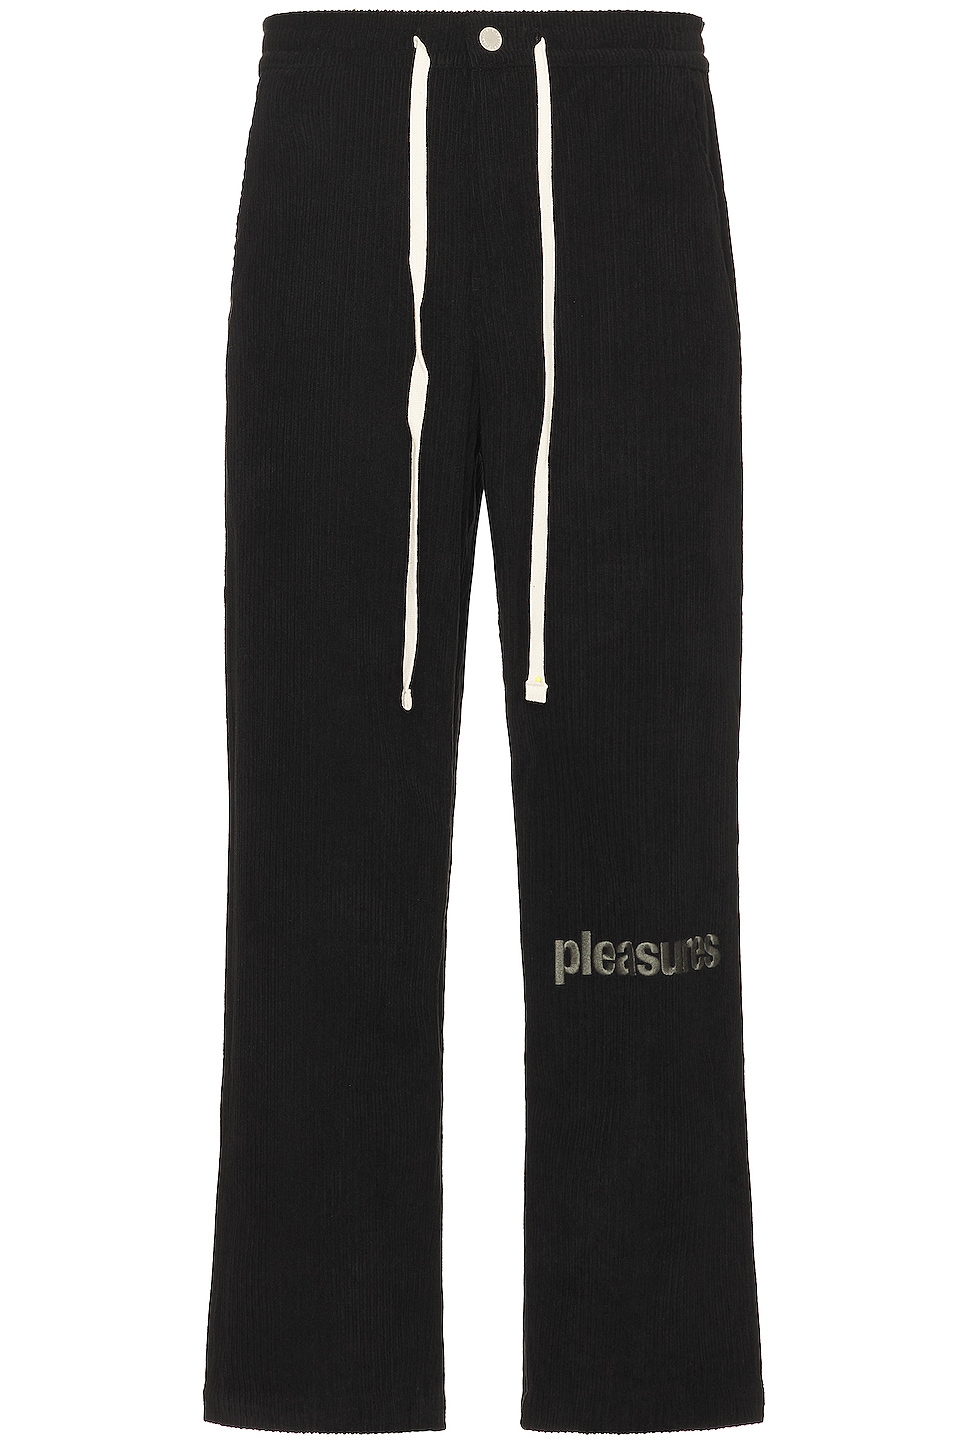 Image 1 of Pleasures Levy Corduroy Wide Pants in Black